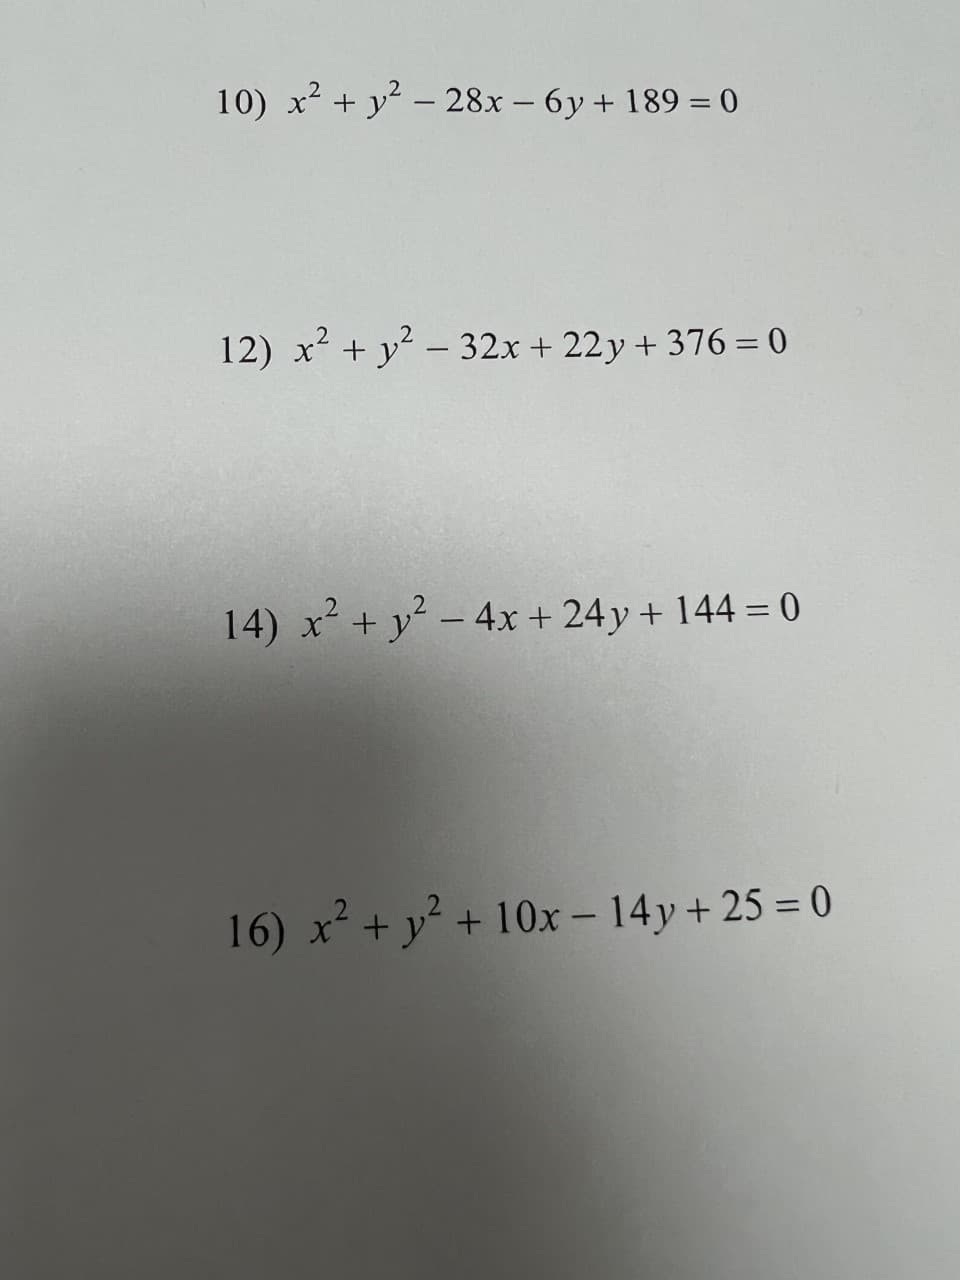 10) x² + y² - 28x - 6y + 189 = 0
12) x² + y² - 32x + 22y+376 = 0
2
14) x² + y² - 4x + 24y + 144 = 0
16) x² + y² + 10x - 14y+ 25 = 0